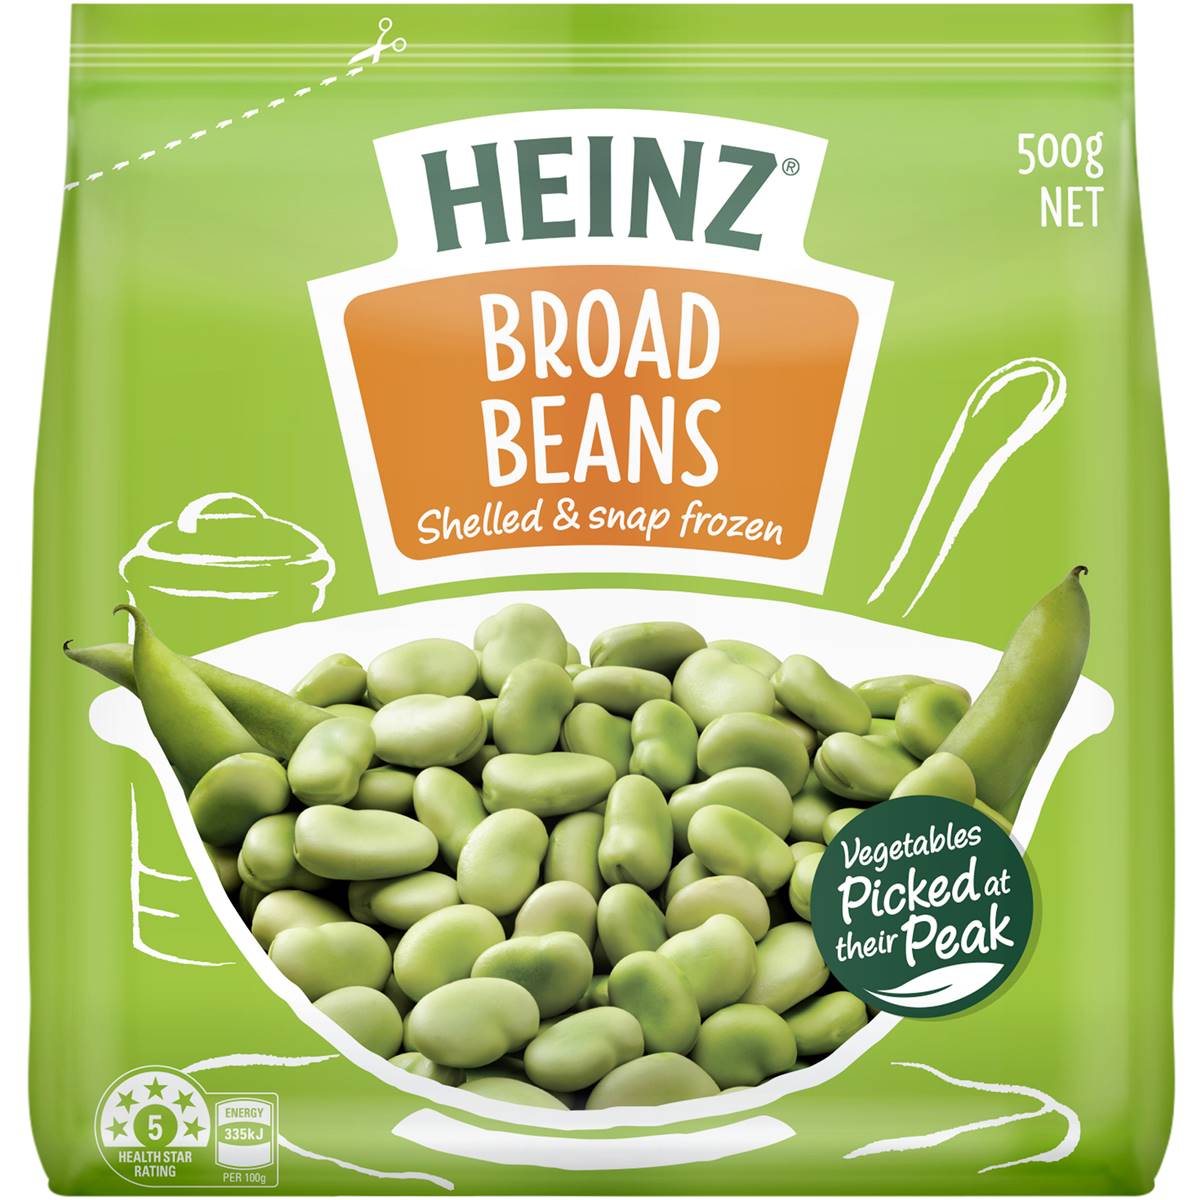 Calories in Heinz Frozen Broad Beans Broad